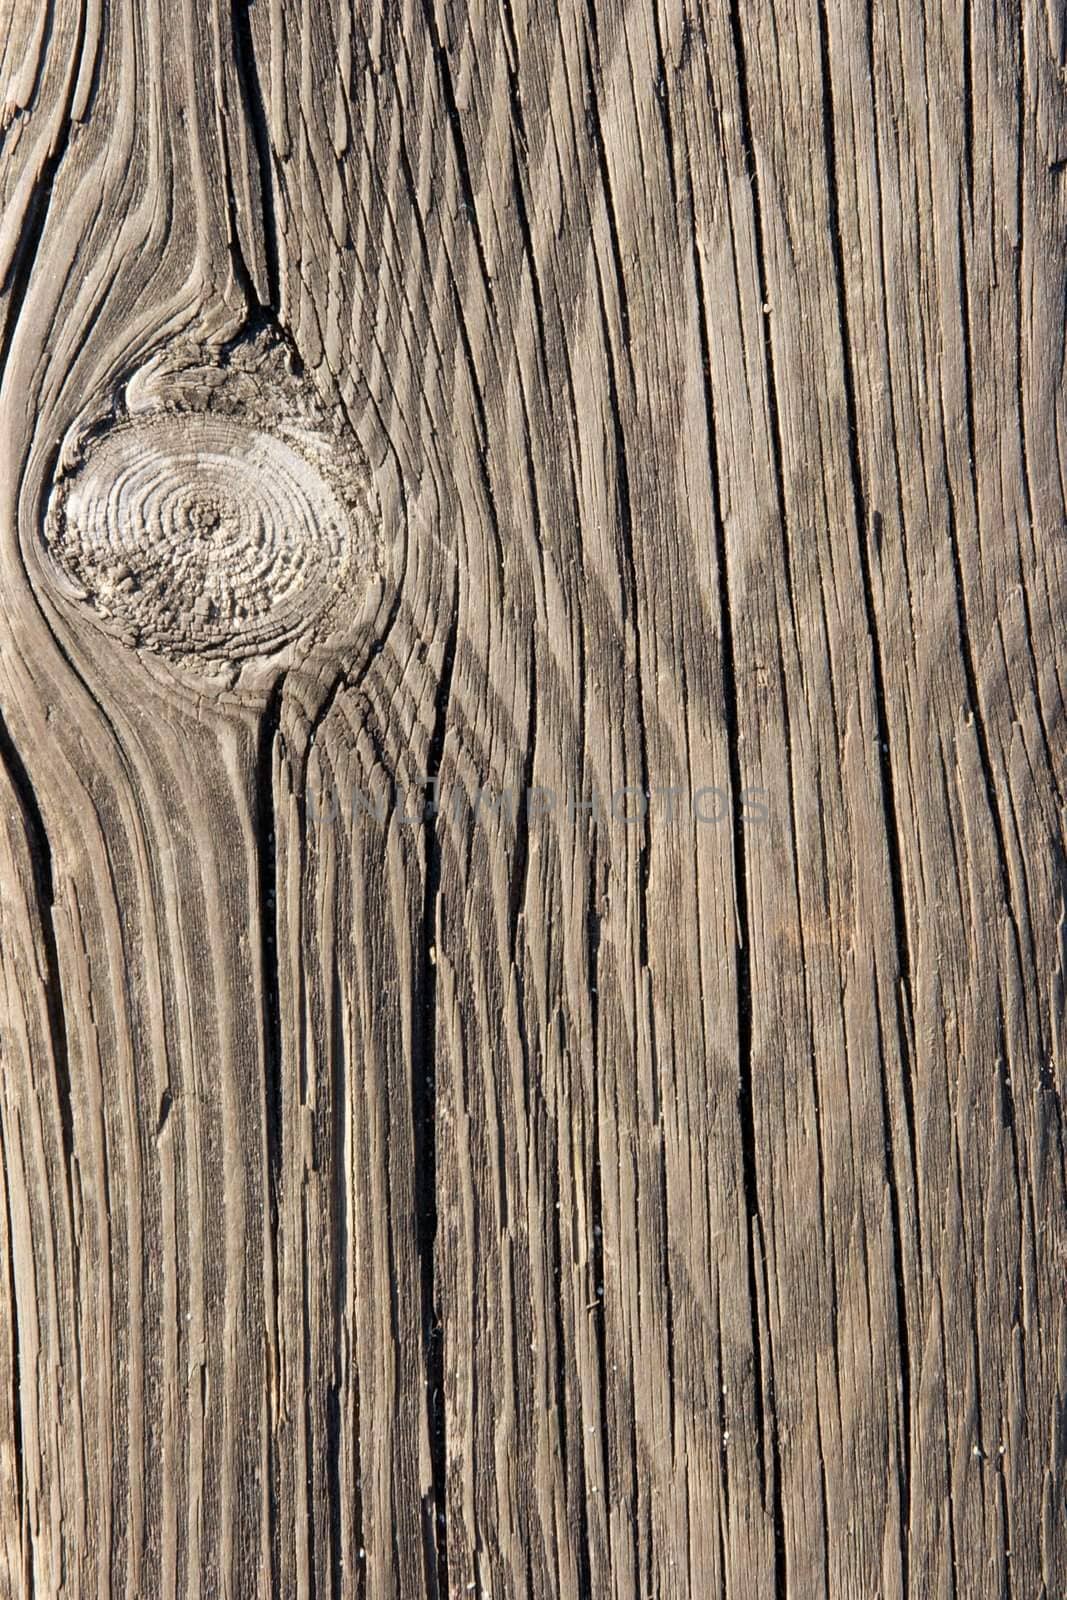 Rough wood texture closeup